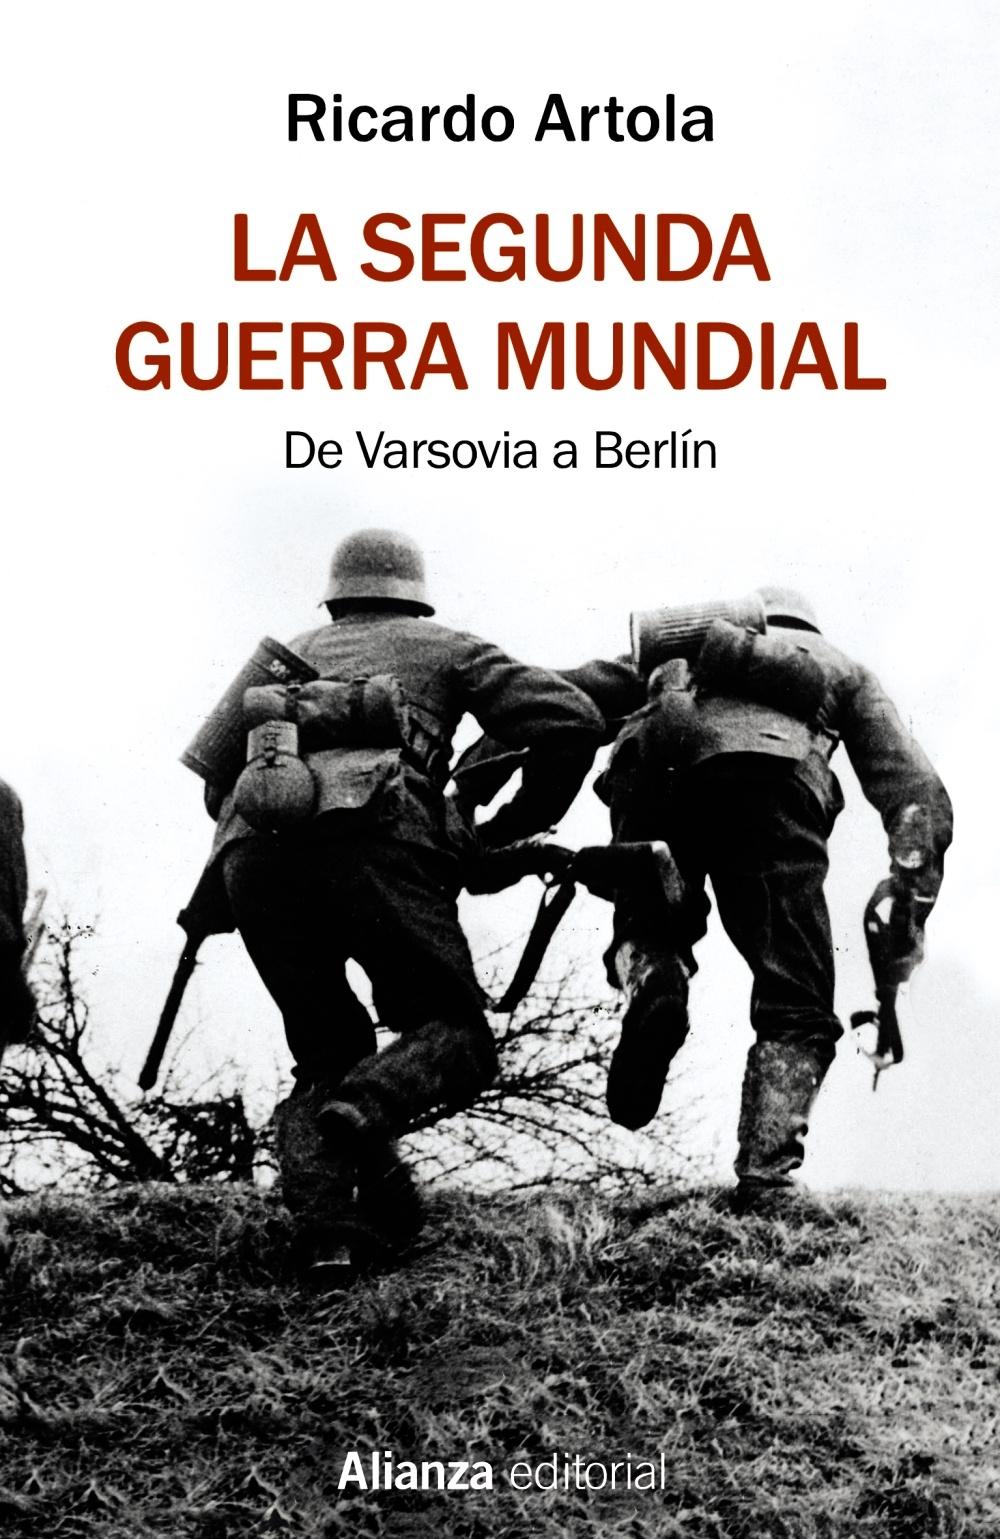 SEGUNDA GUERRA MUNDIAL, LA "DE VARSOVIA A BERLIN"